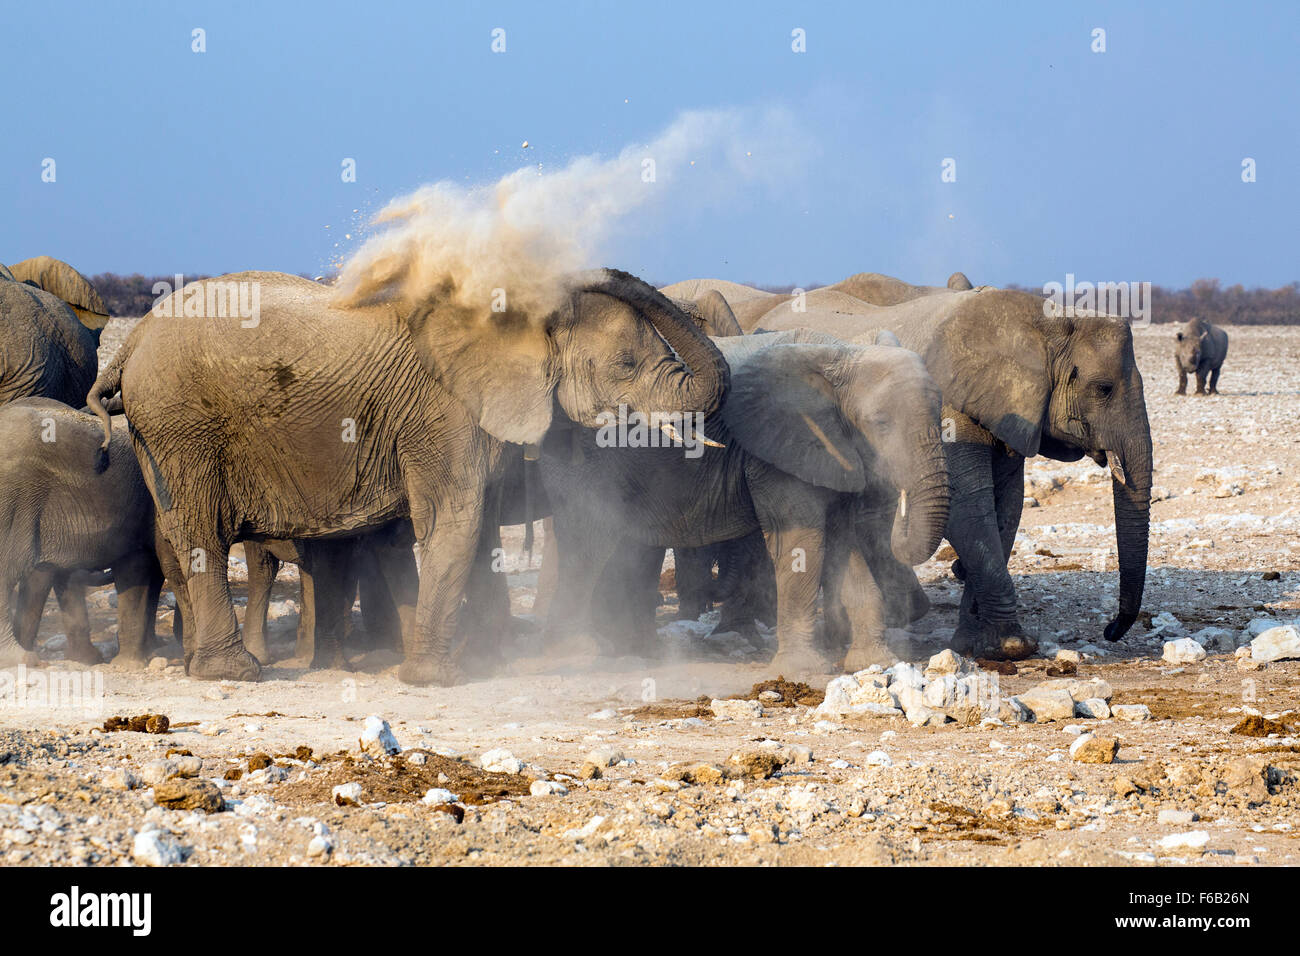 Les éléphants de savane de l'Afrique de l'époussetage, Etosha National Park, Namibie, Afrique Banque D'Images